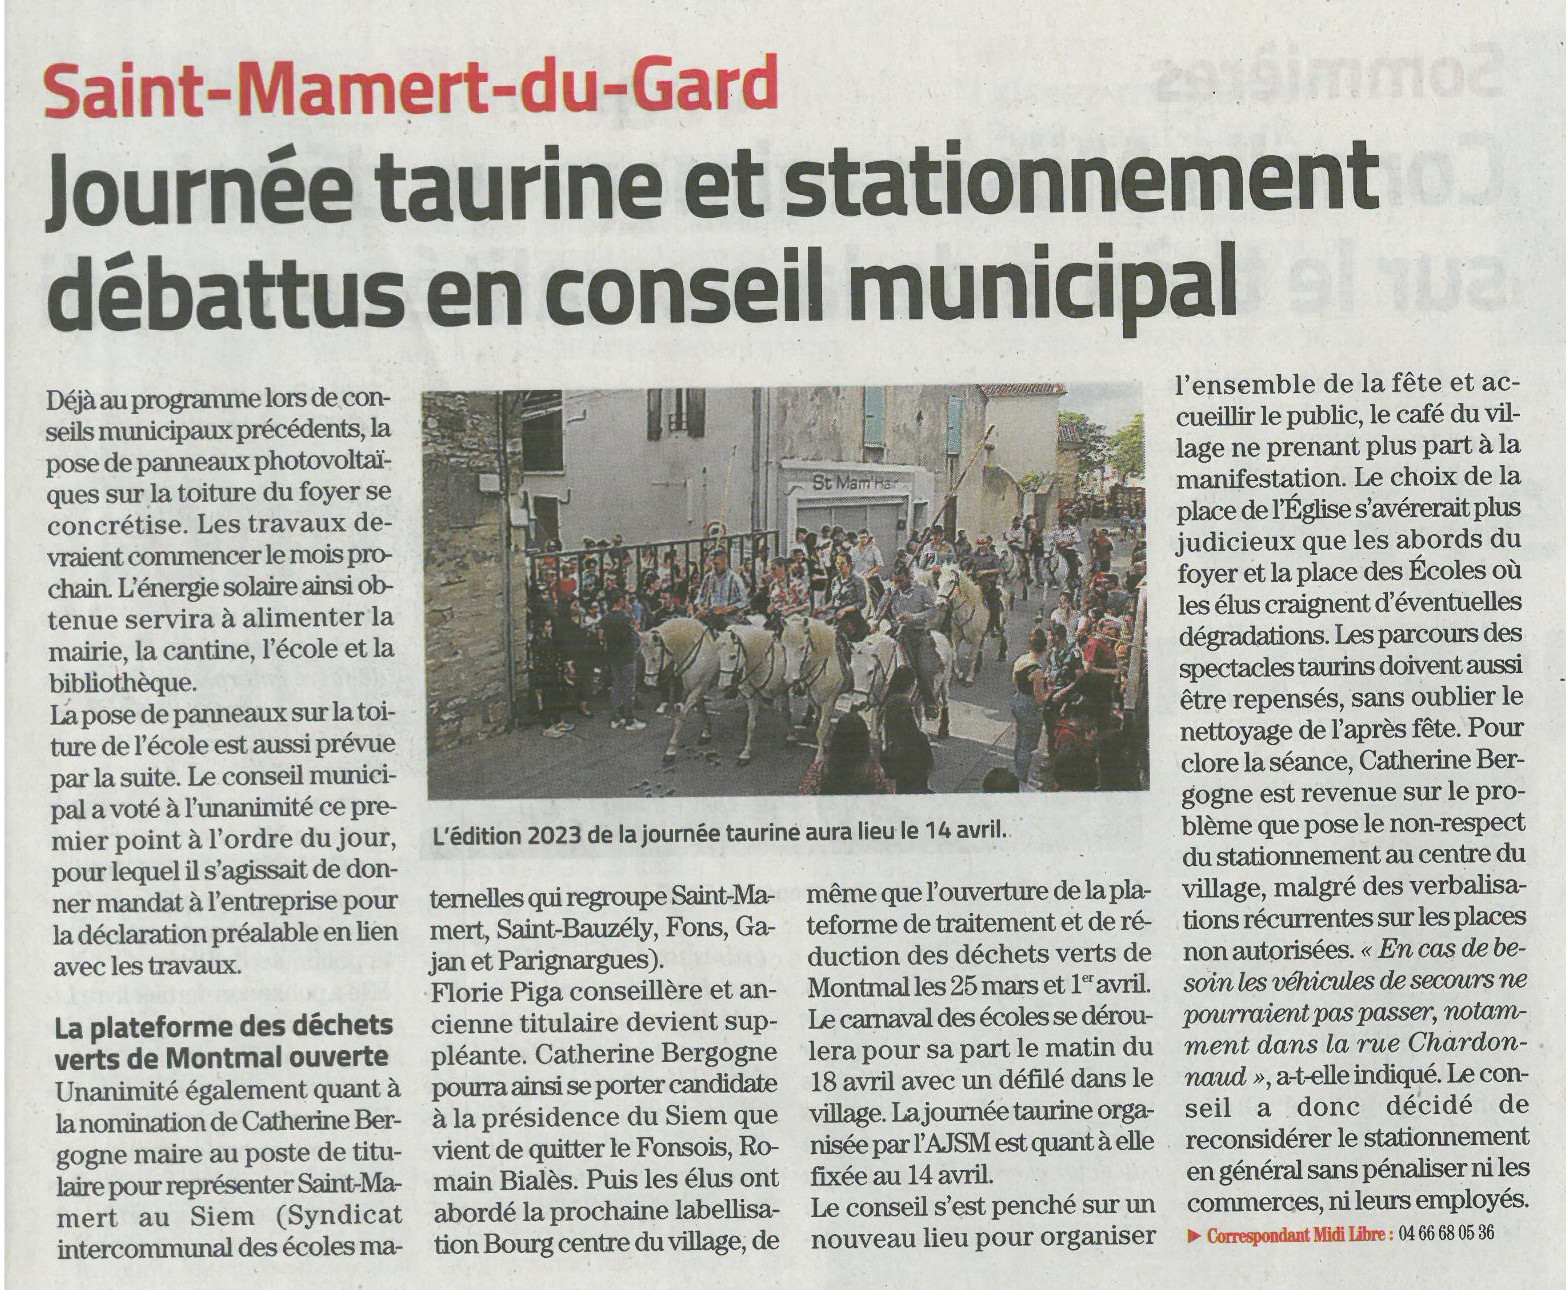 Le conseil municipal de Saint-Mamert-du-Gard